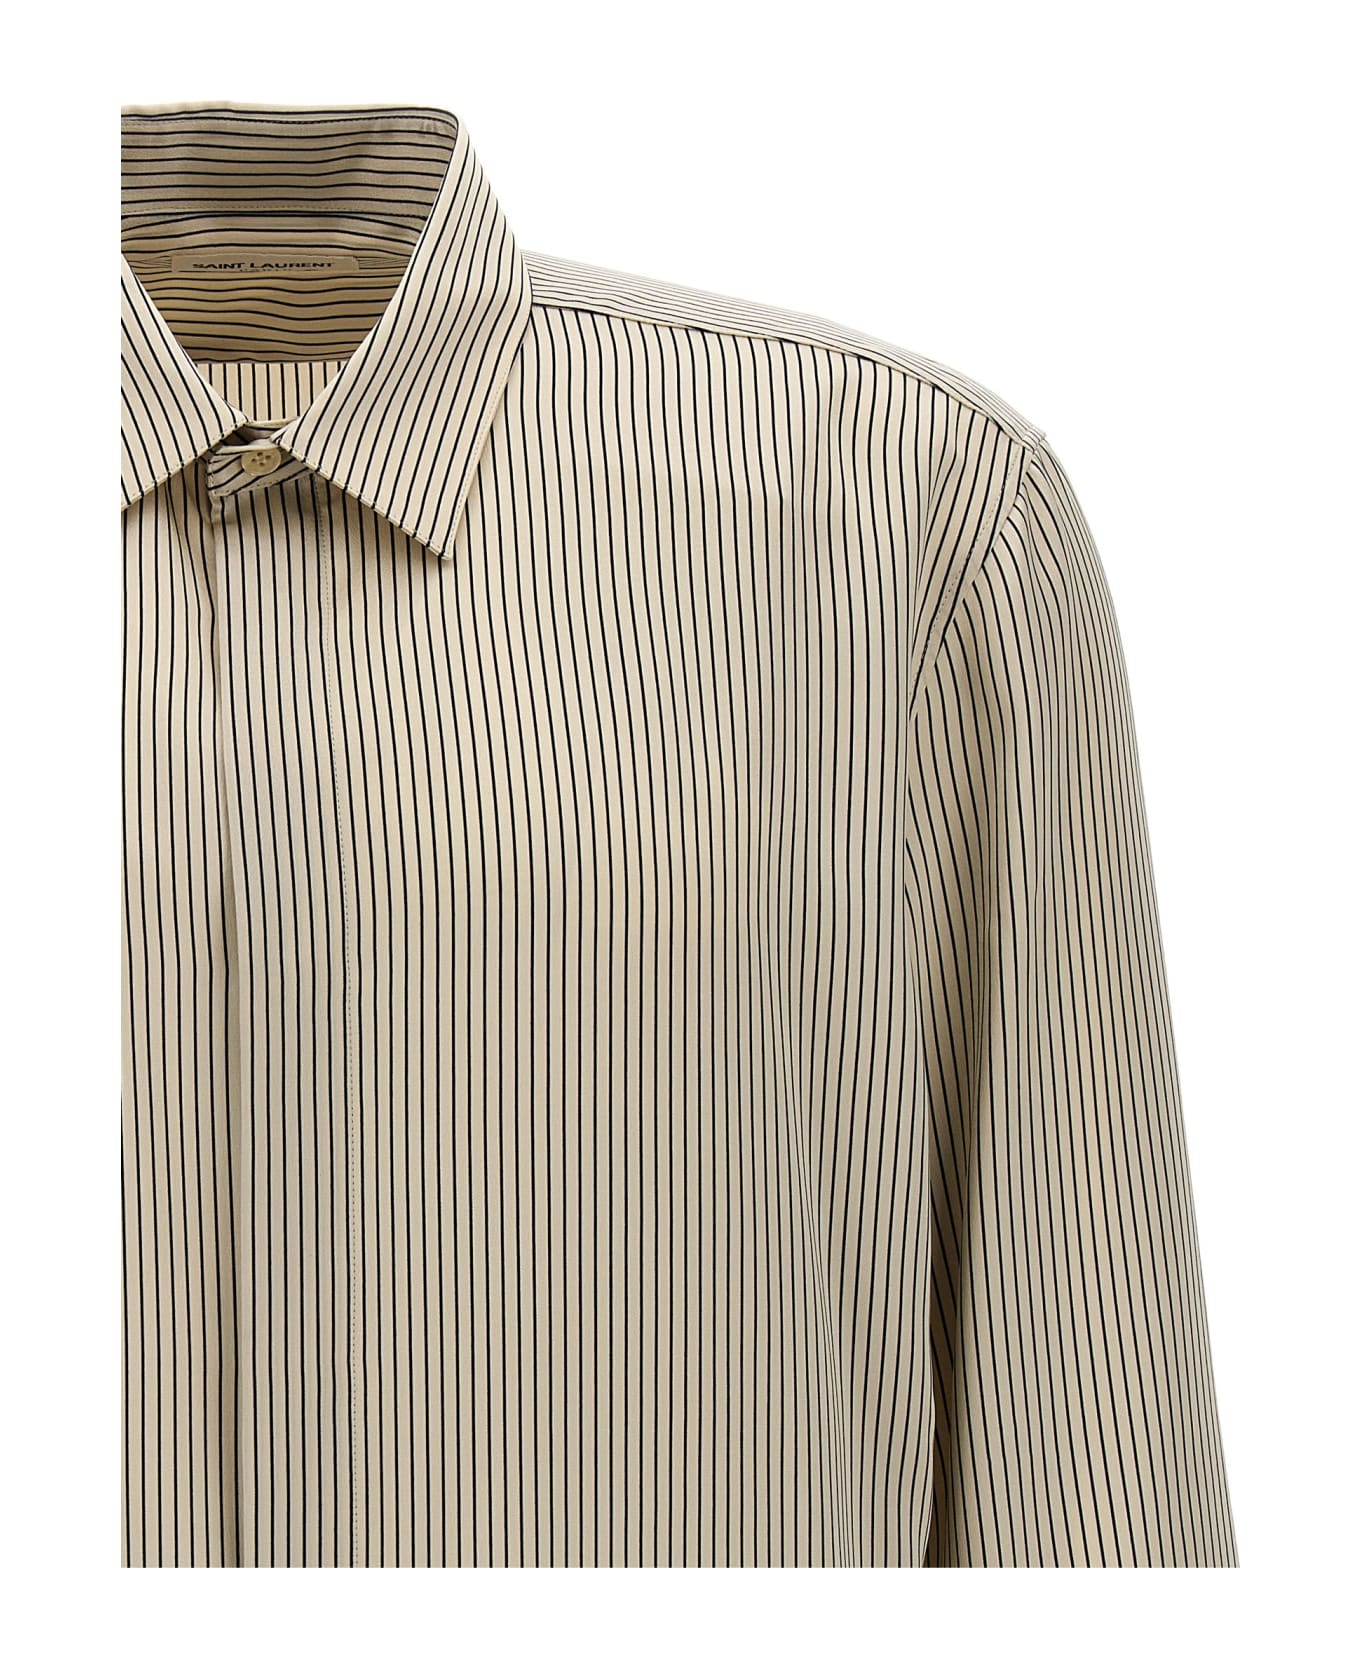 Saint Laurent Striped Satin Shirt - White